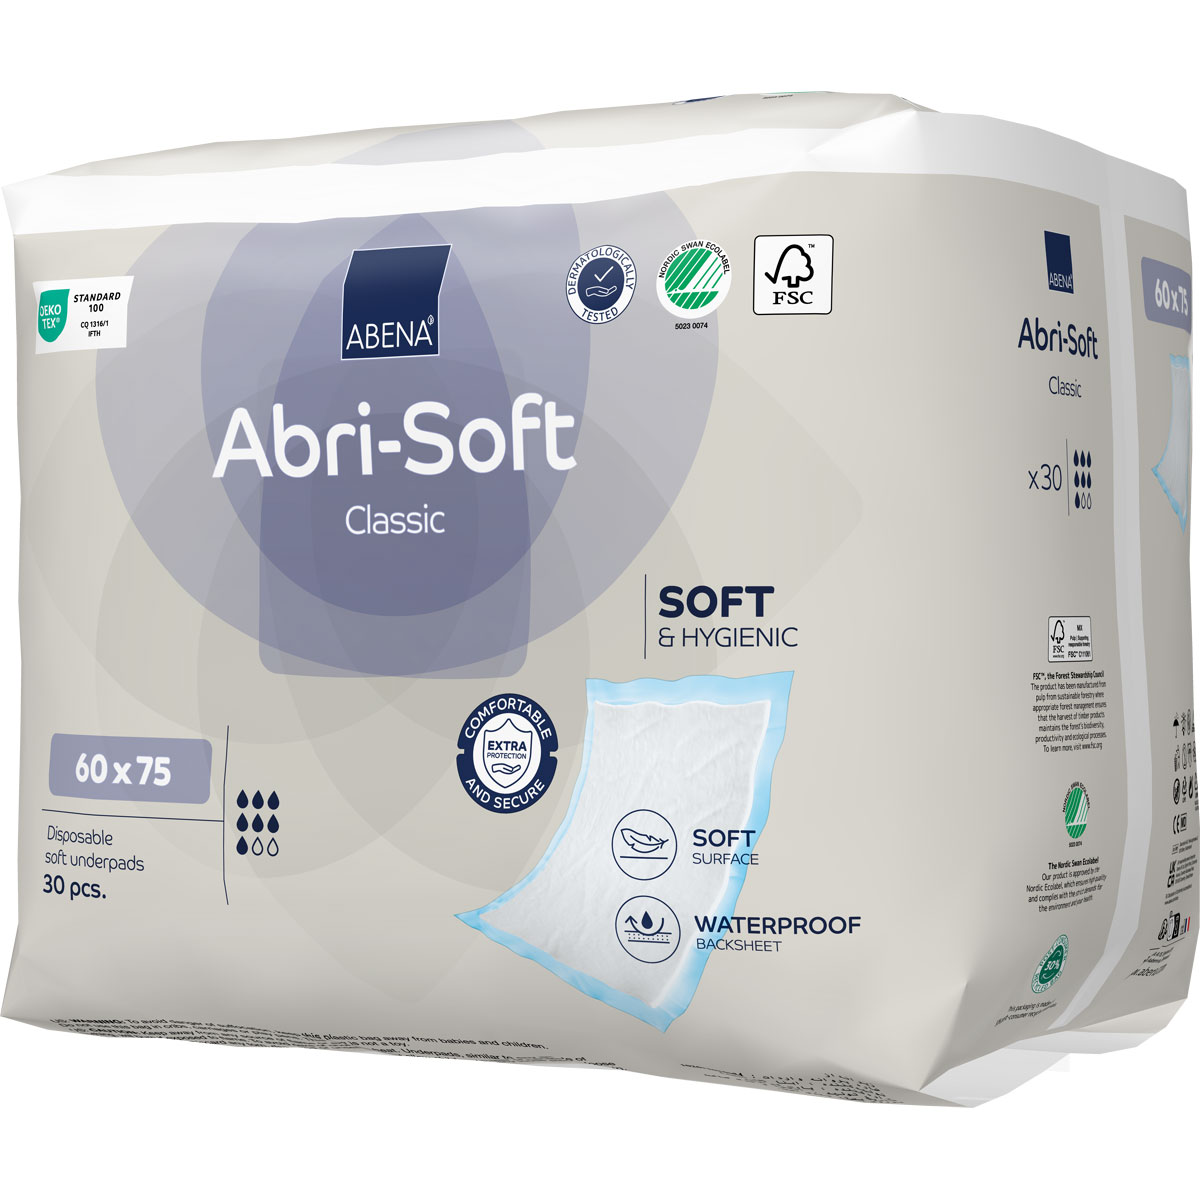 ABENA Abri-Soft CLASSIC Betteinlagen 60 x 75cm (30 Stück Packung)